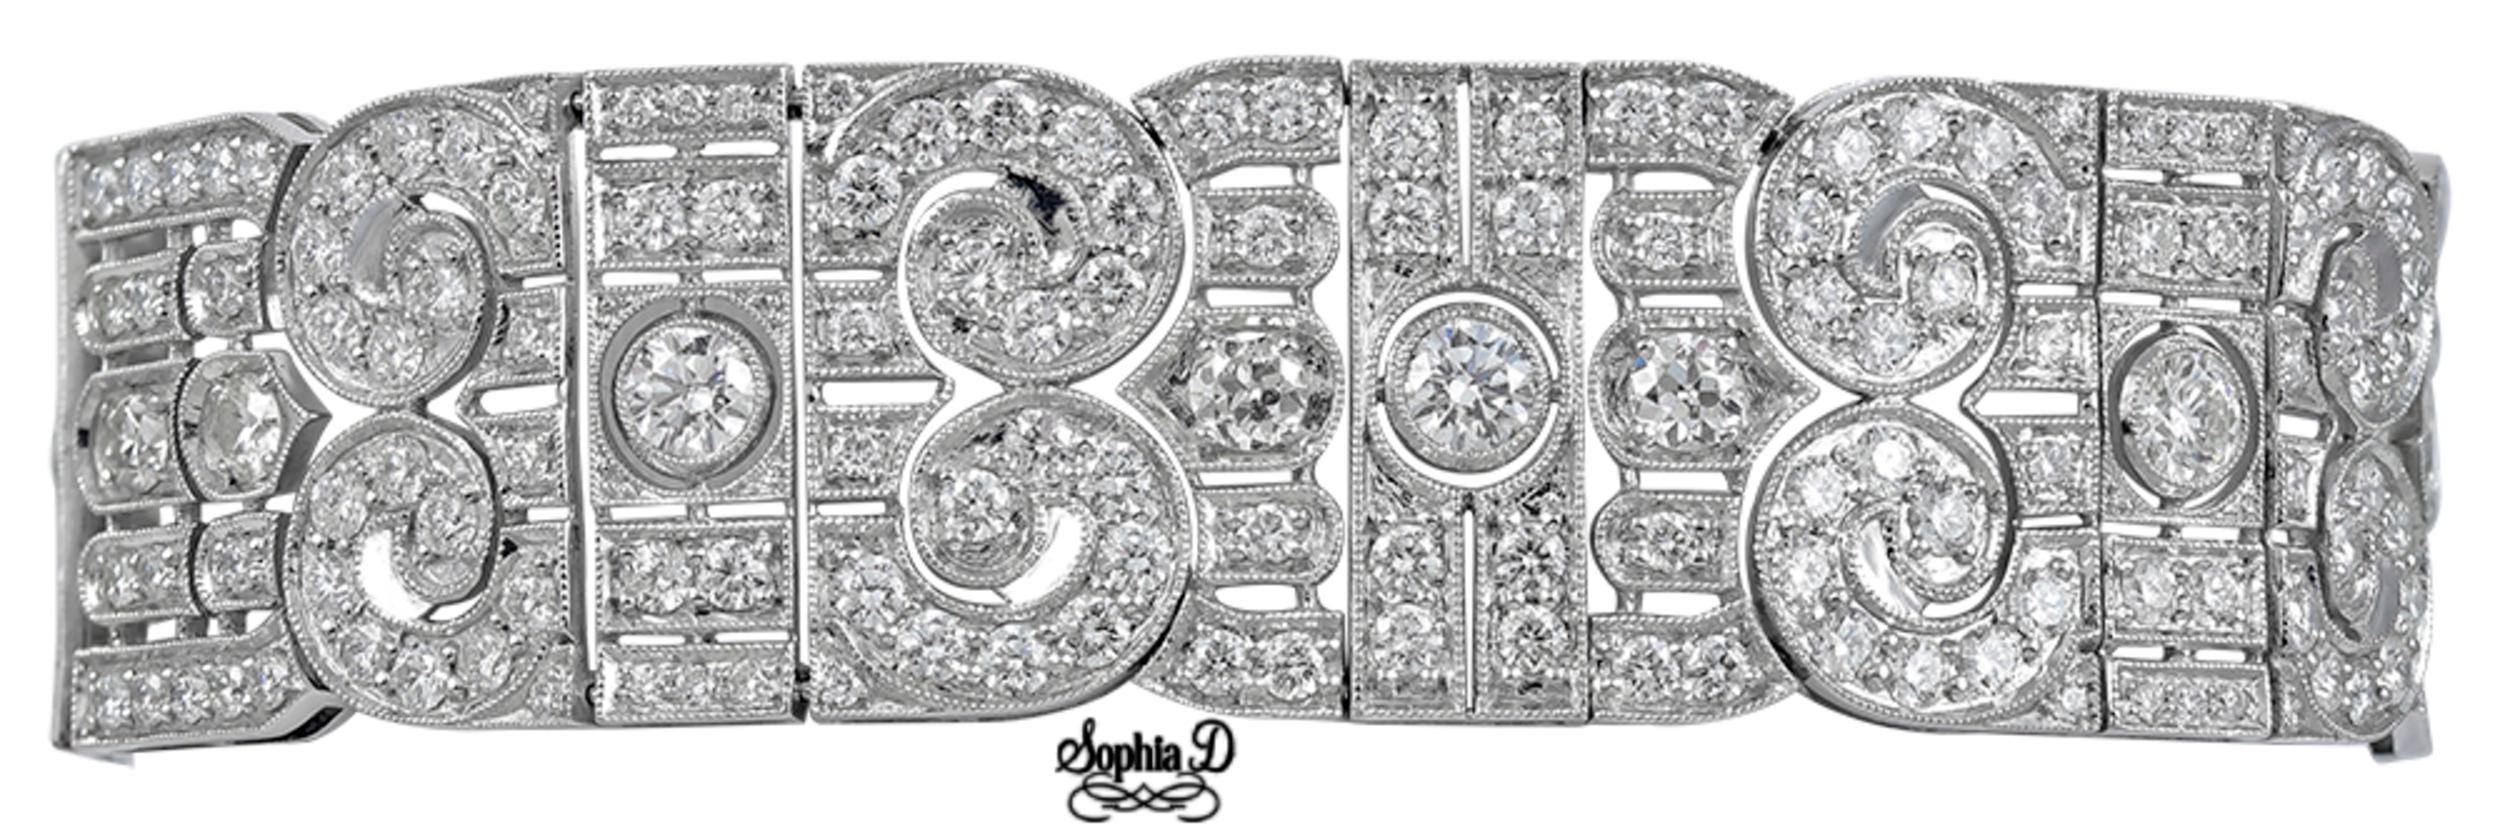 Dieses atemberaubende Armband, entworfen von Sophia D, besteht aus 6 runden Diamanten mit einem Gesamtkaratgewicht von 3,74 Karat, umgeben von runden Brillanten mit einem Karatgewicht von 17,63. 

Die Länge des Armbands ist 7,5